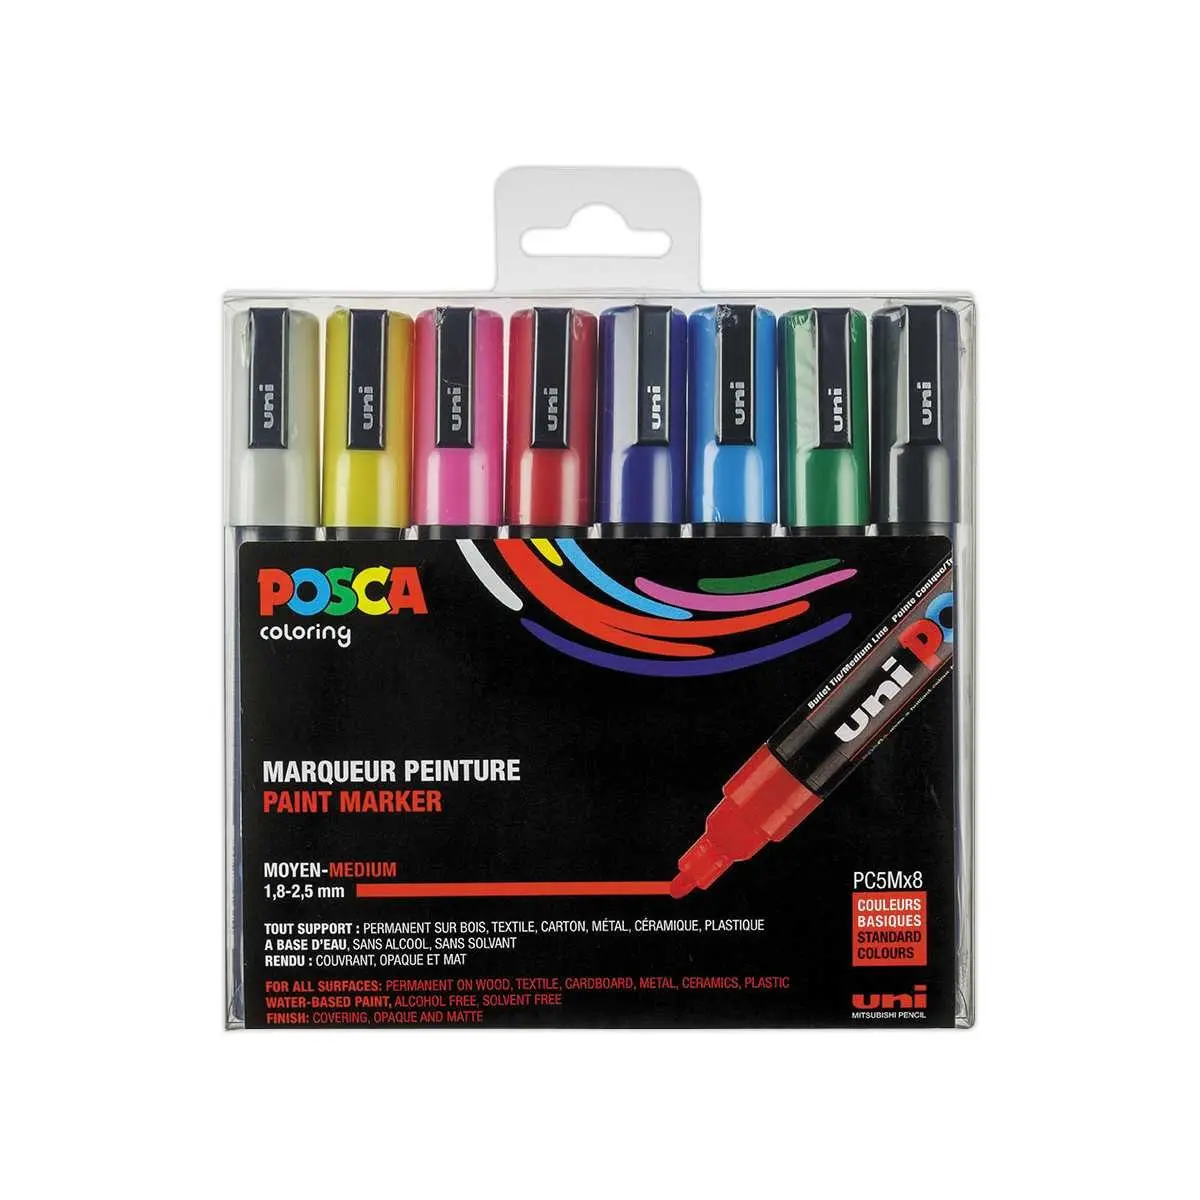 Ensemble de 8 lampes de stylo de couleur assorties avec ampoule